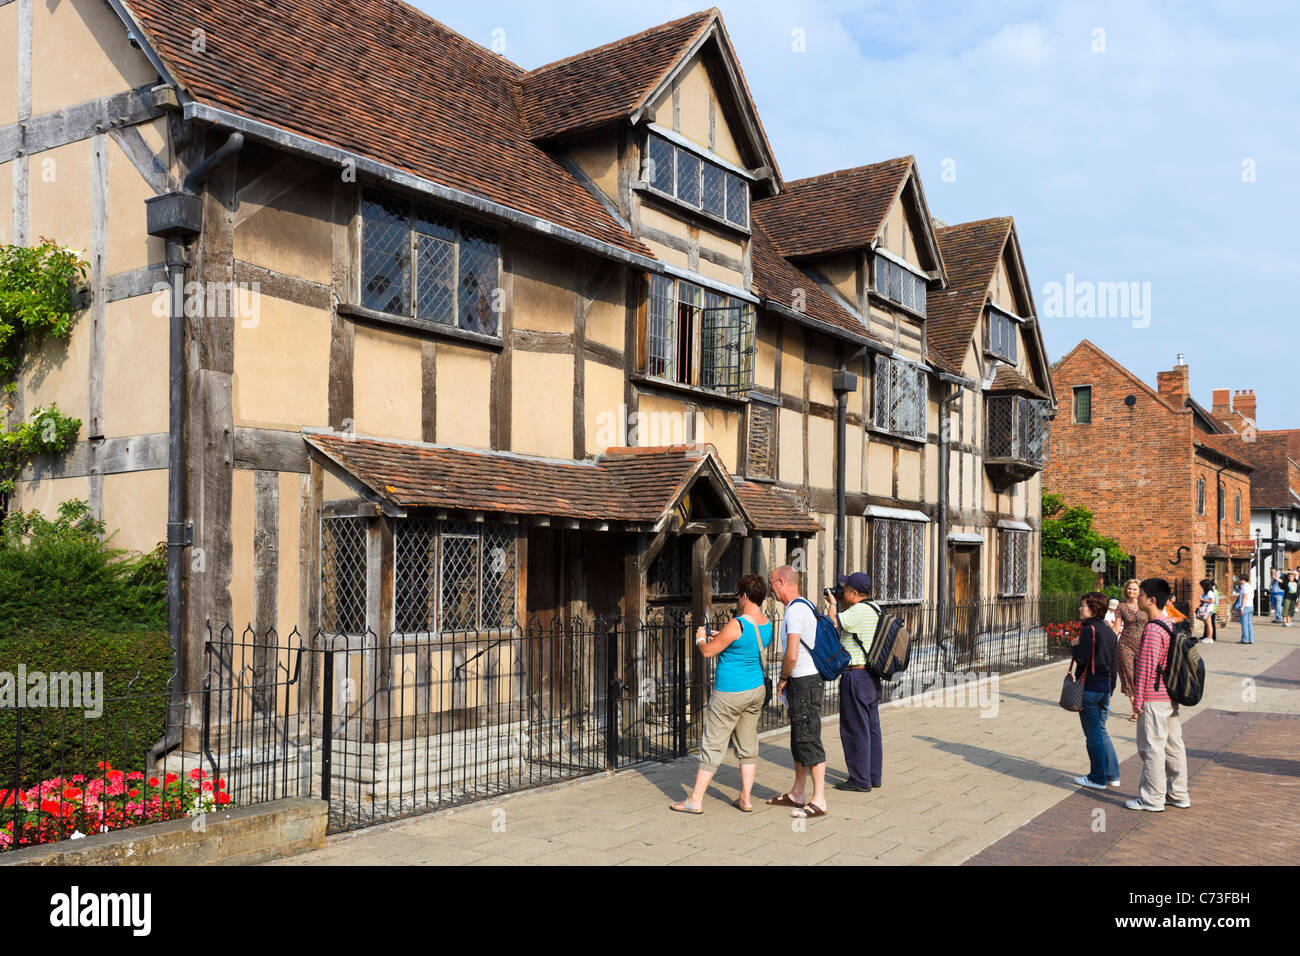 Les touristes en dehors de la naissance de William Shakespeare, Henley Road, Stratford-upon-Avon, Warwickshire, England, UK Banque D'Images